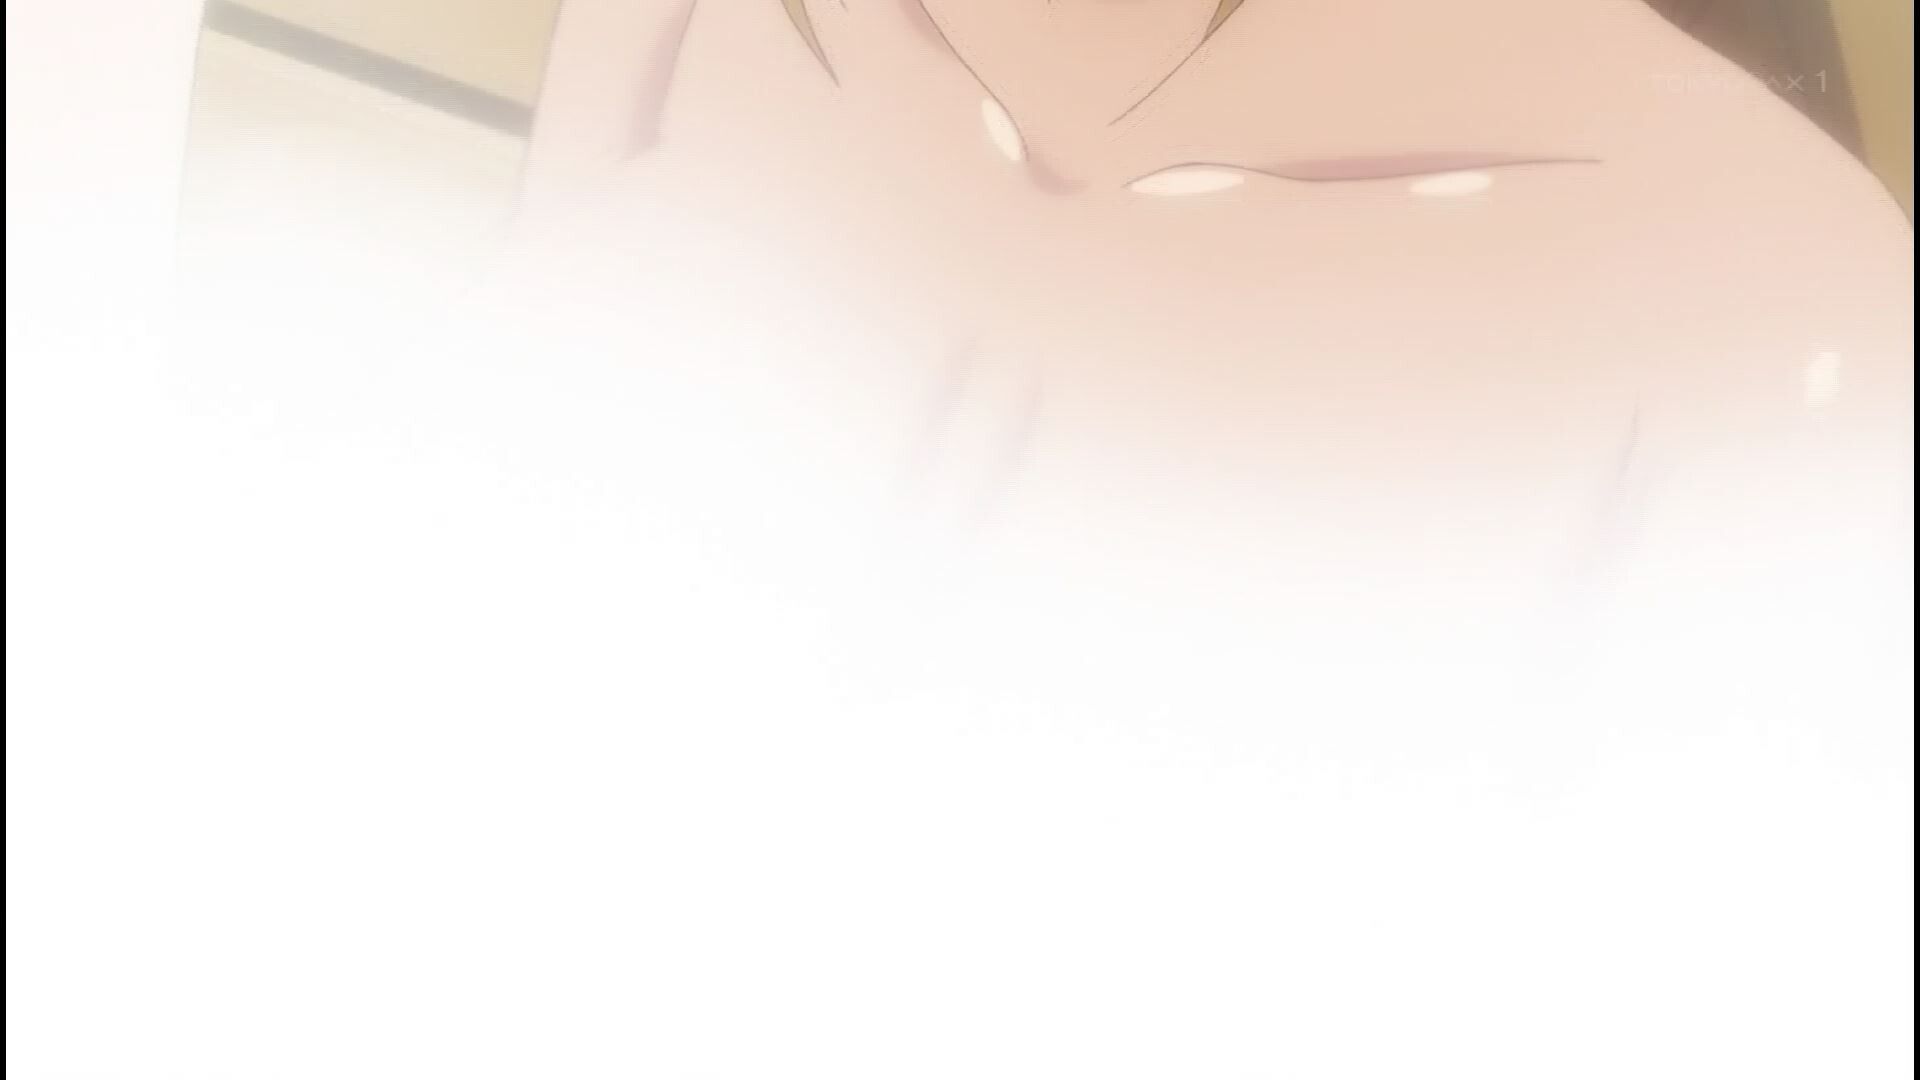 Anime [Kandagawa JETGIRLS] 8 episodes of girls erotic round-view bath bathing scene! 12